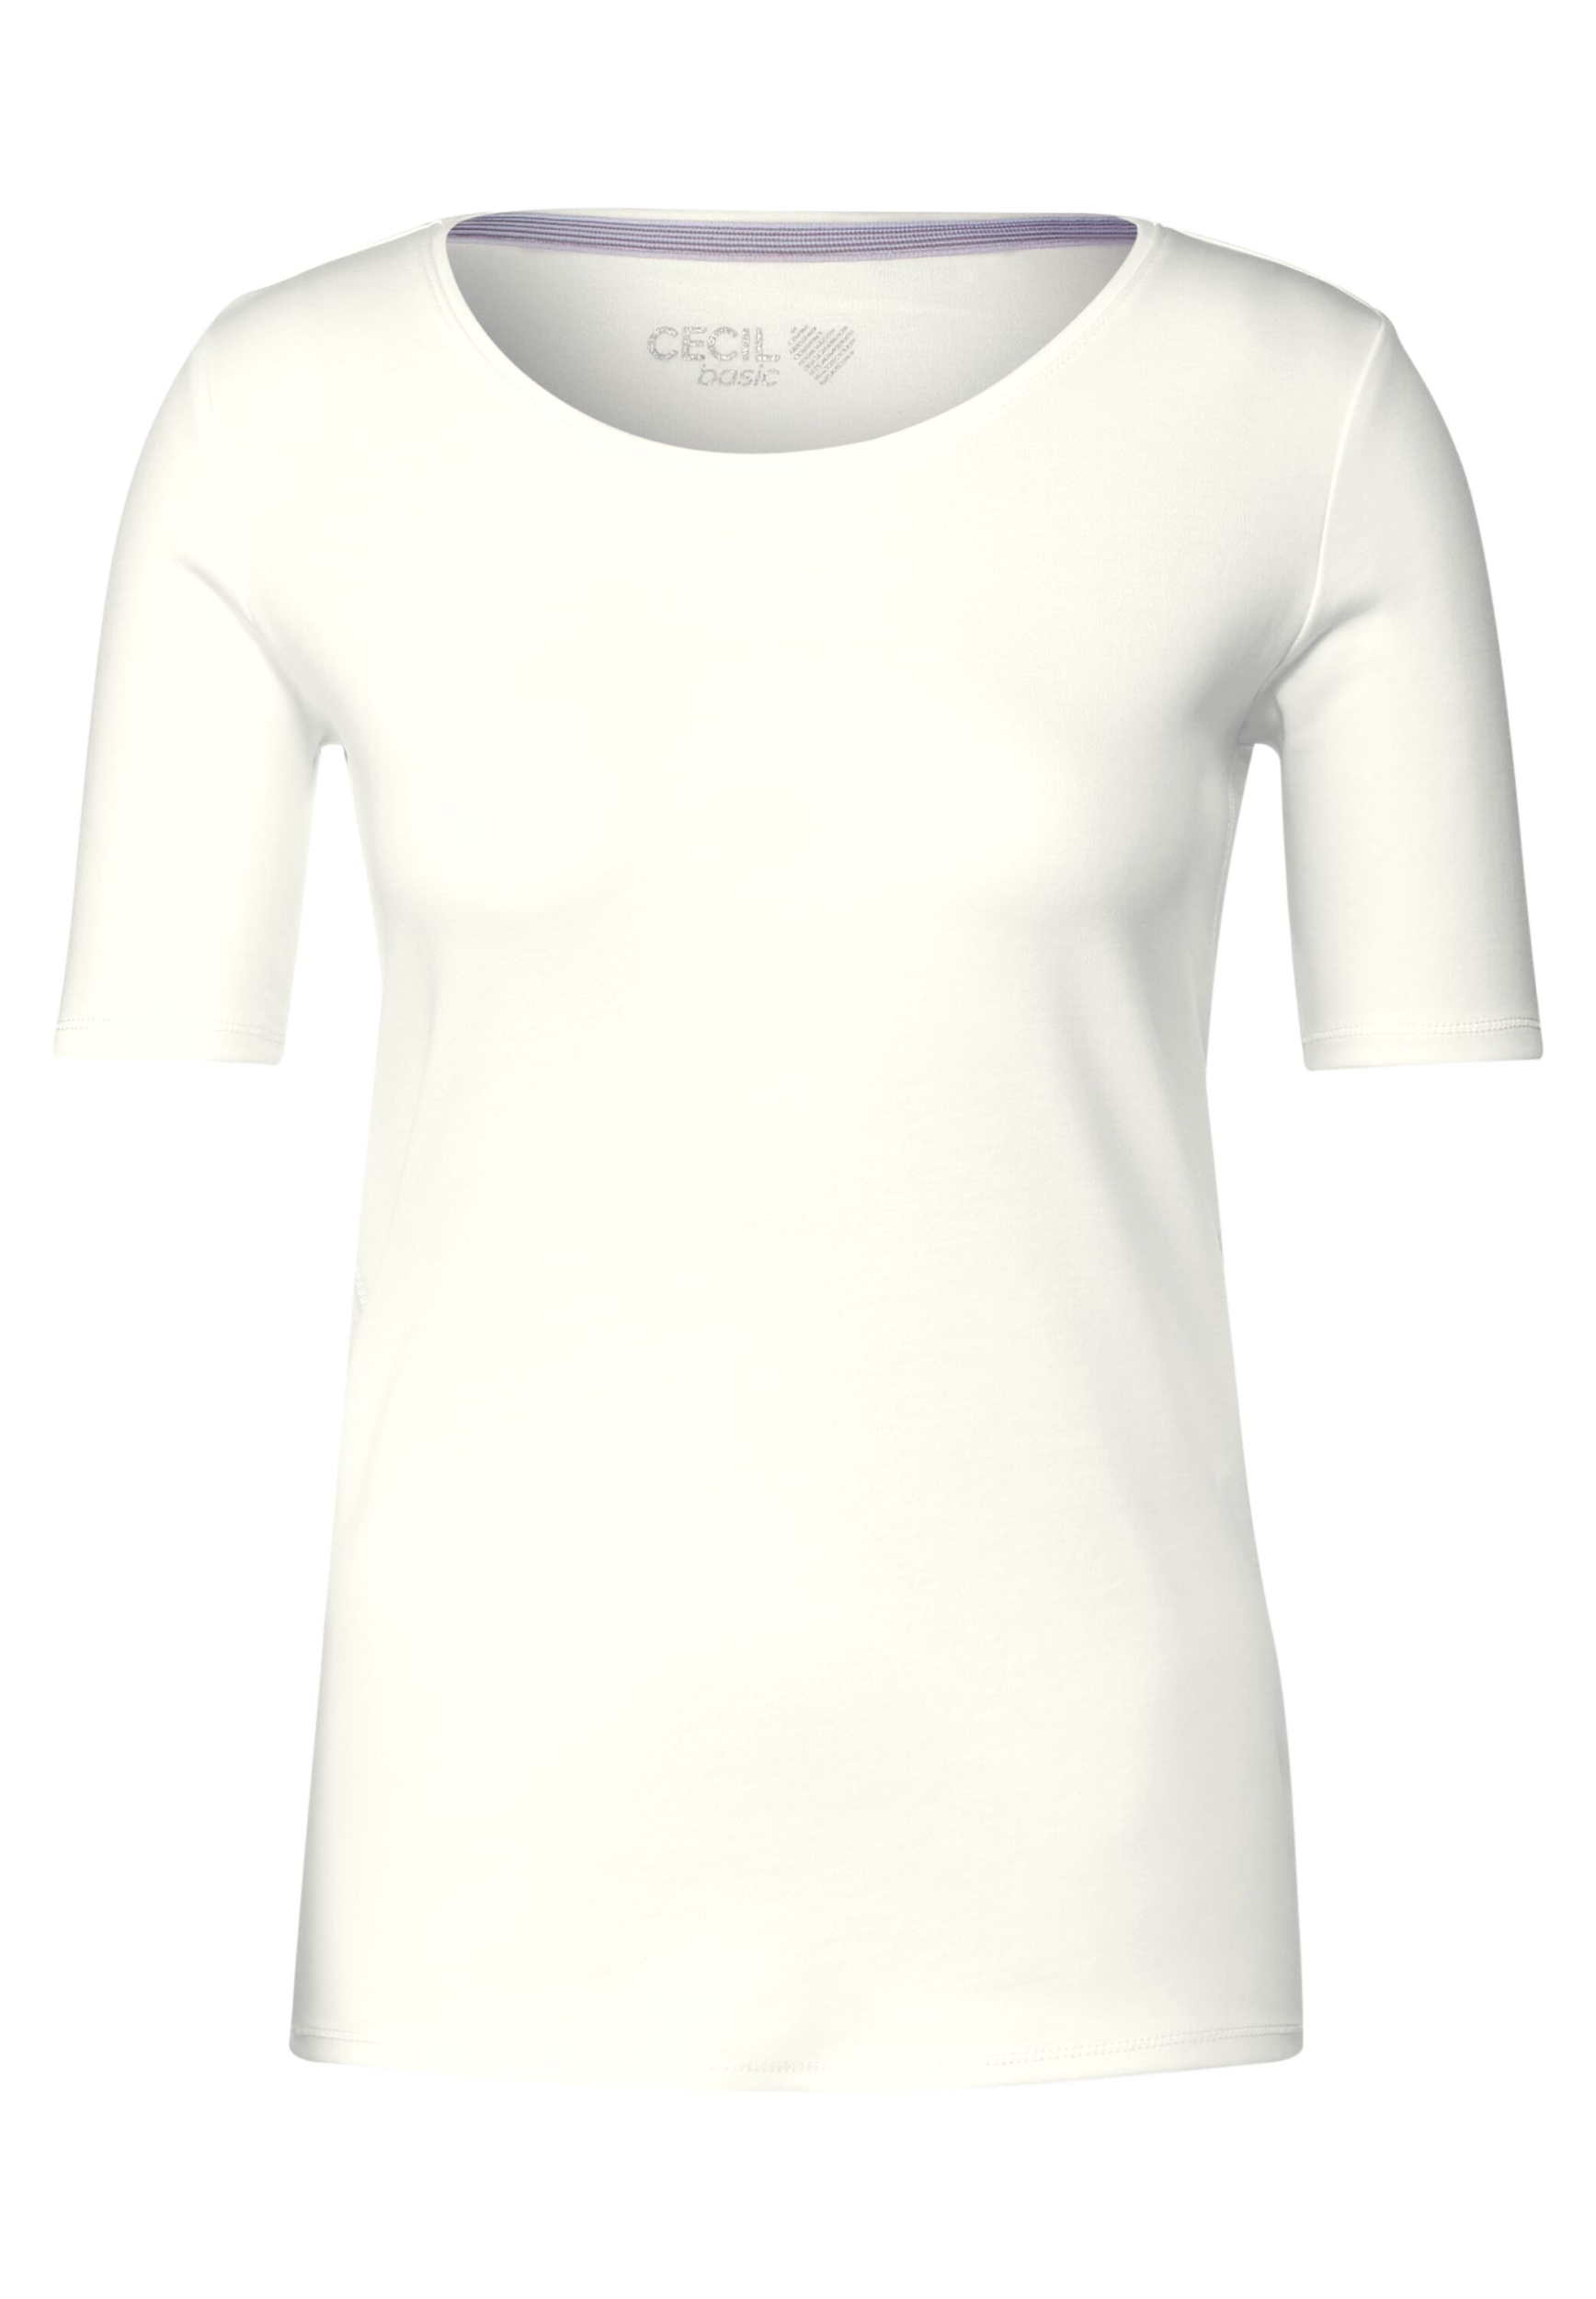 Style NOS Lena | | | B317515-13474-XL XL vanilla white